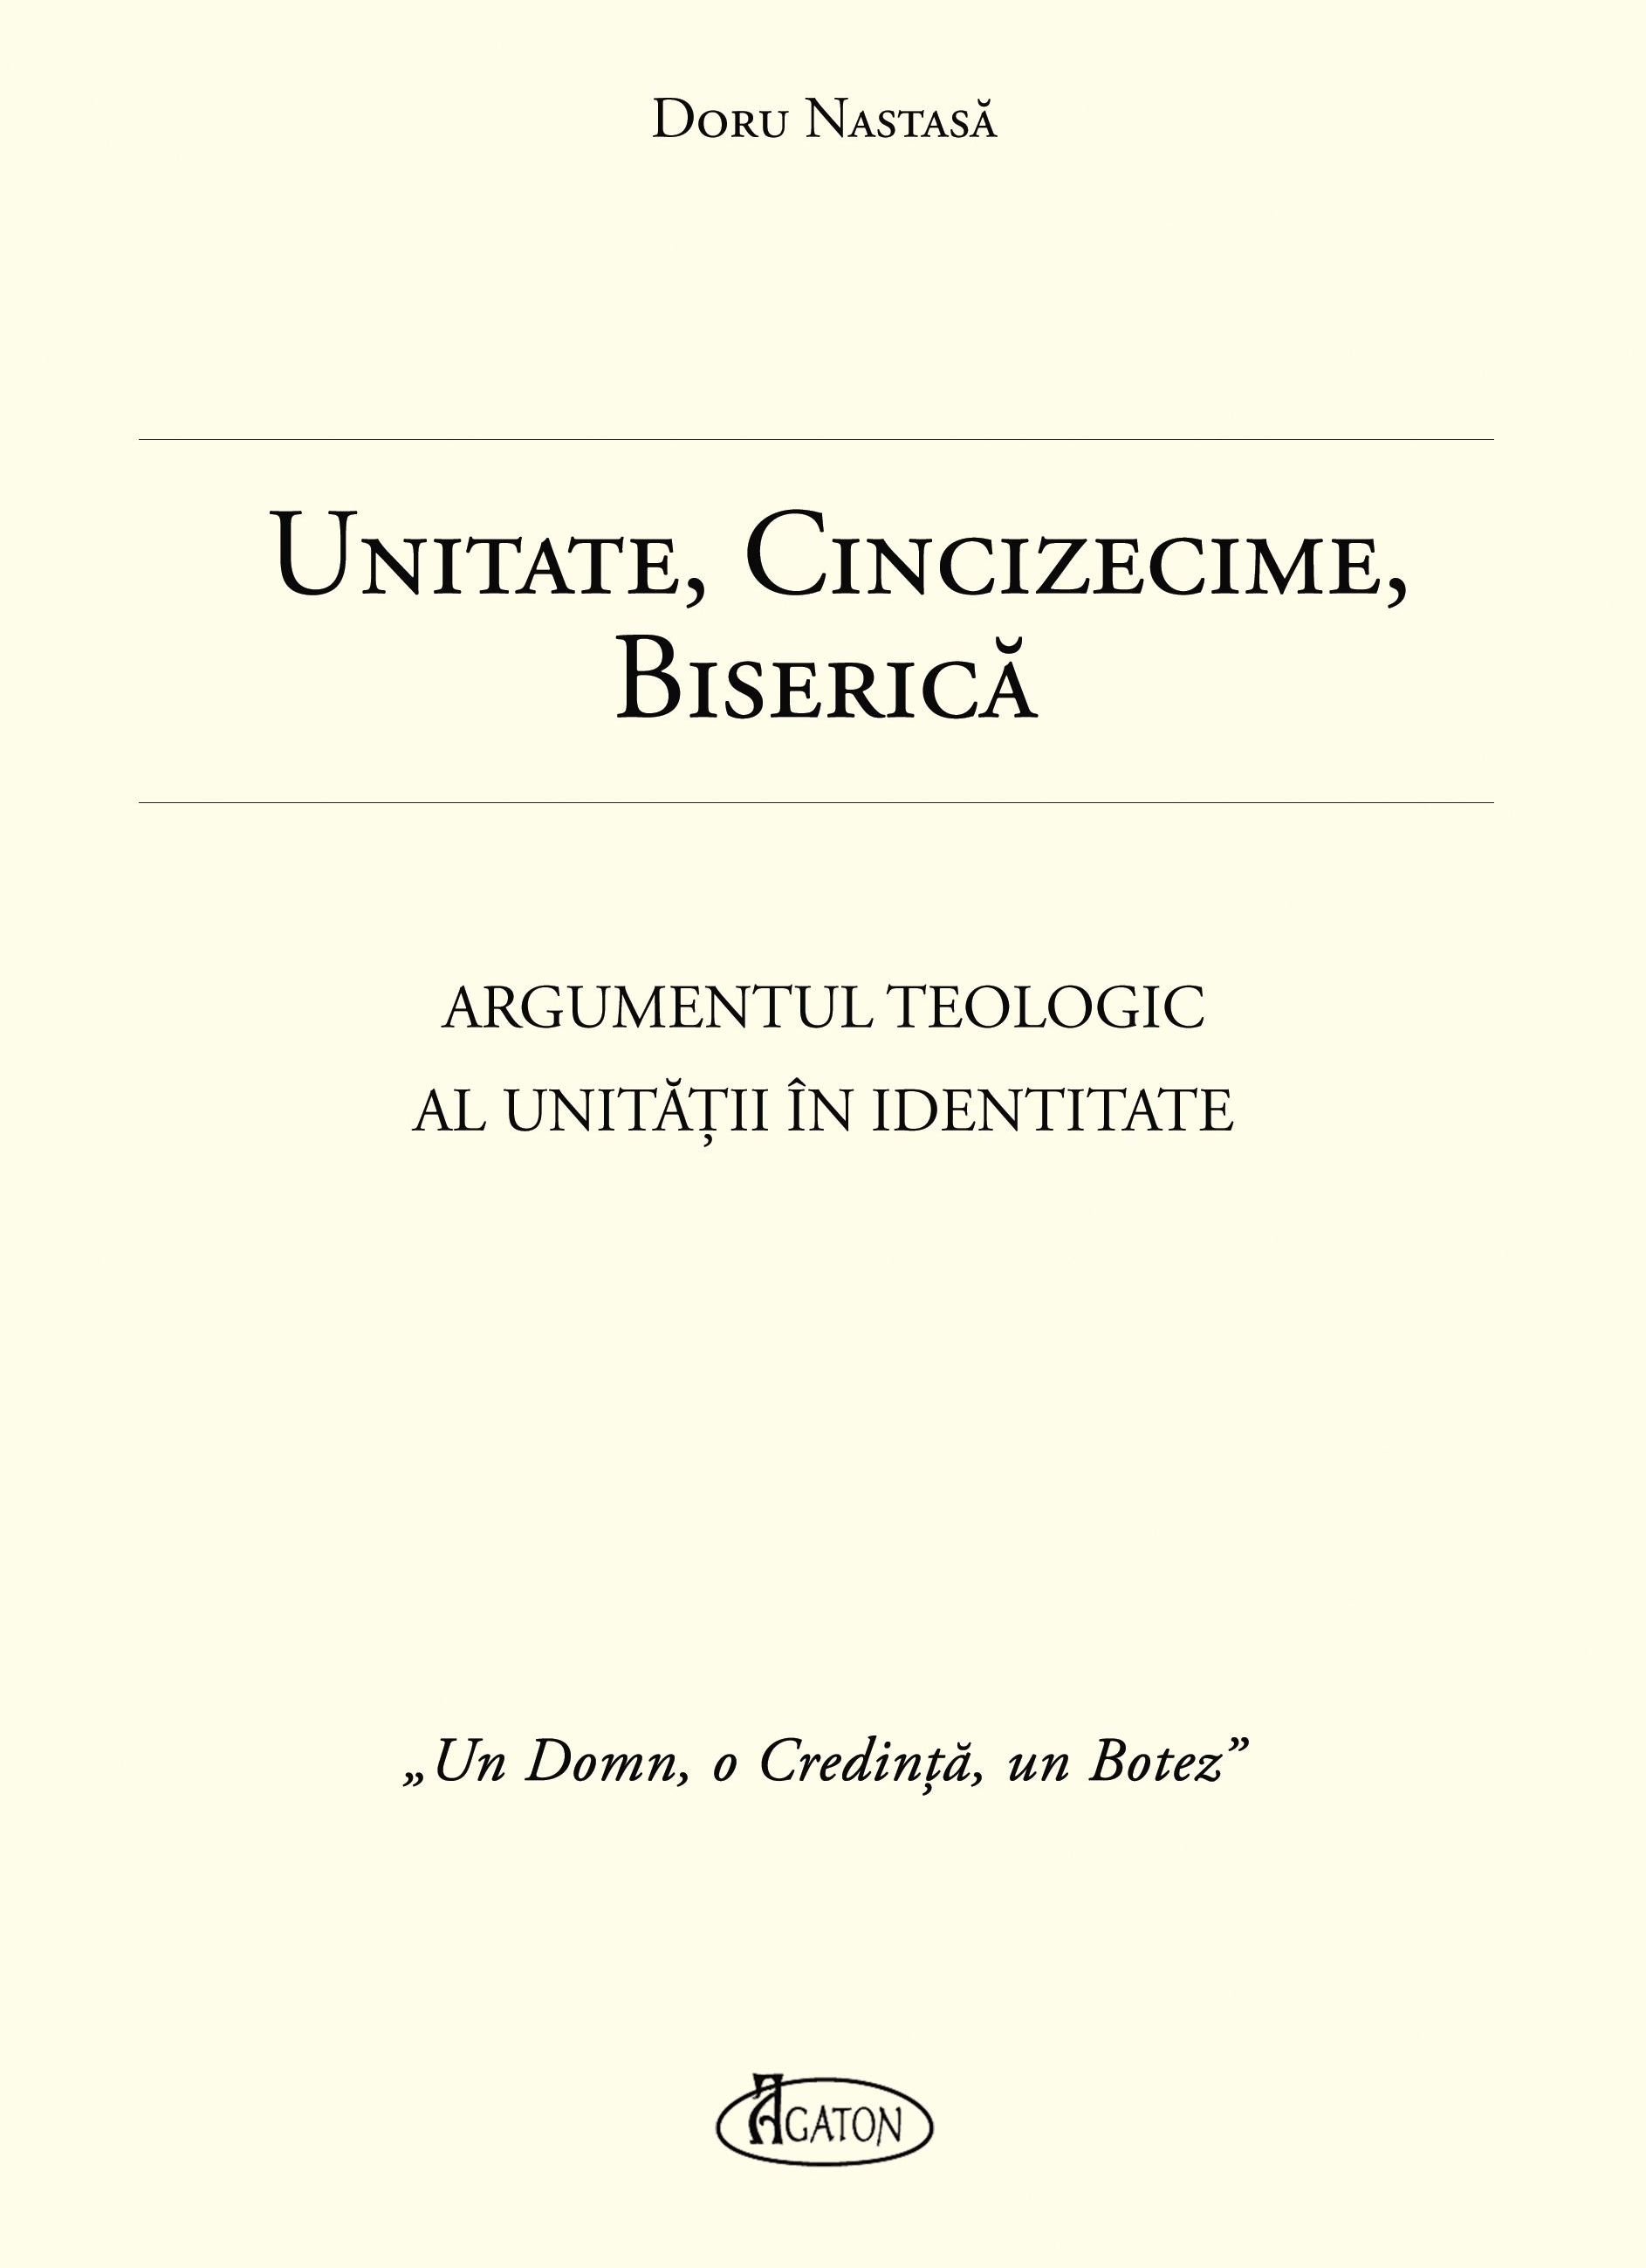 Unitate, Cincizecime, Biserica - Argumentul teologic al unitatii in identitate - Doru Nastasa (CARTE)